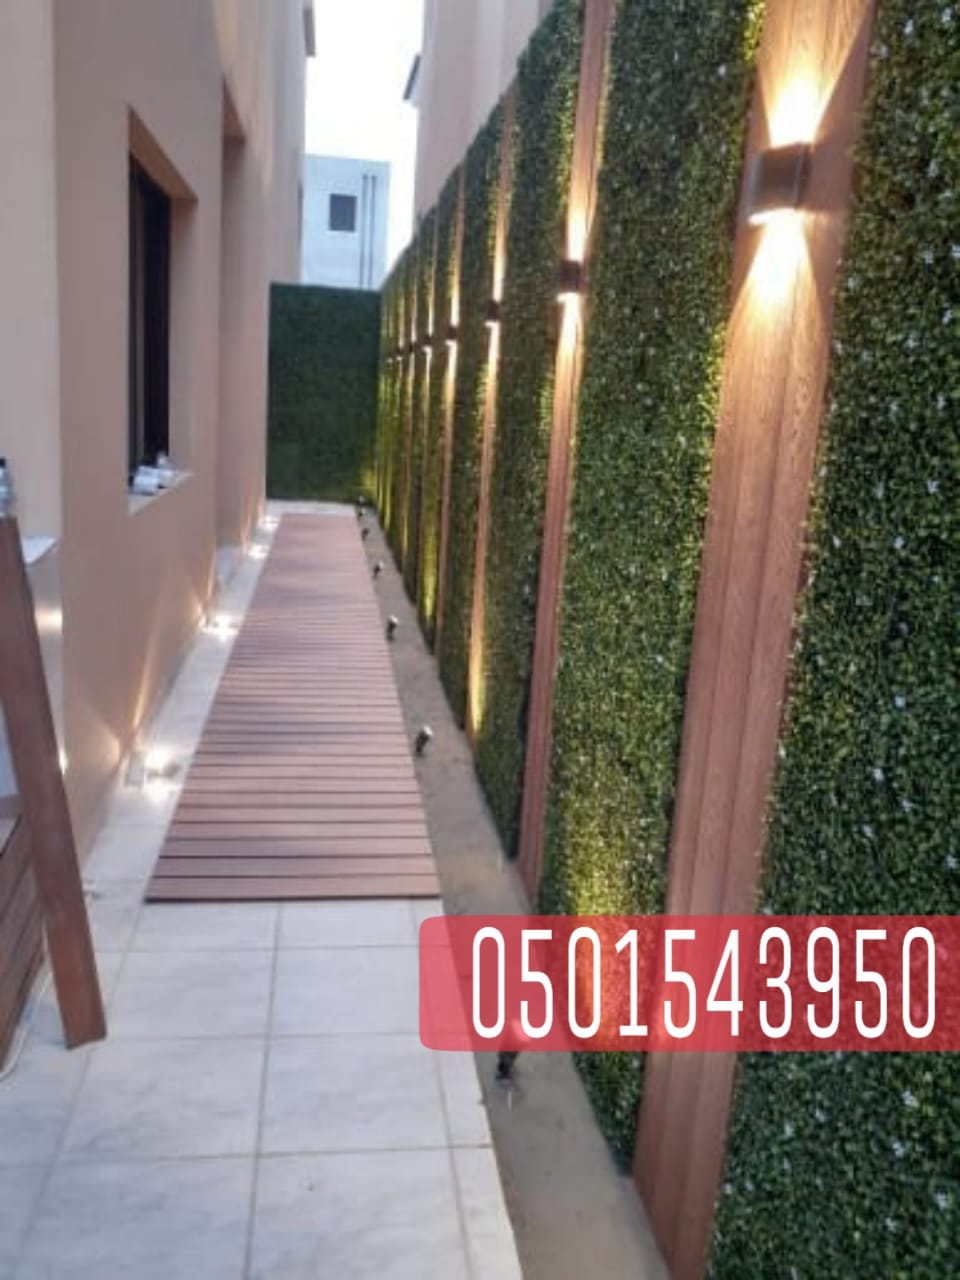 تصميم تنسيق حدائق خارجية للمنزل مع جلسات خشبية في جدة 0501543950 P_2078ieq8y8